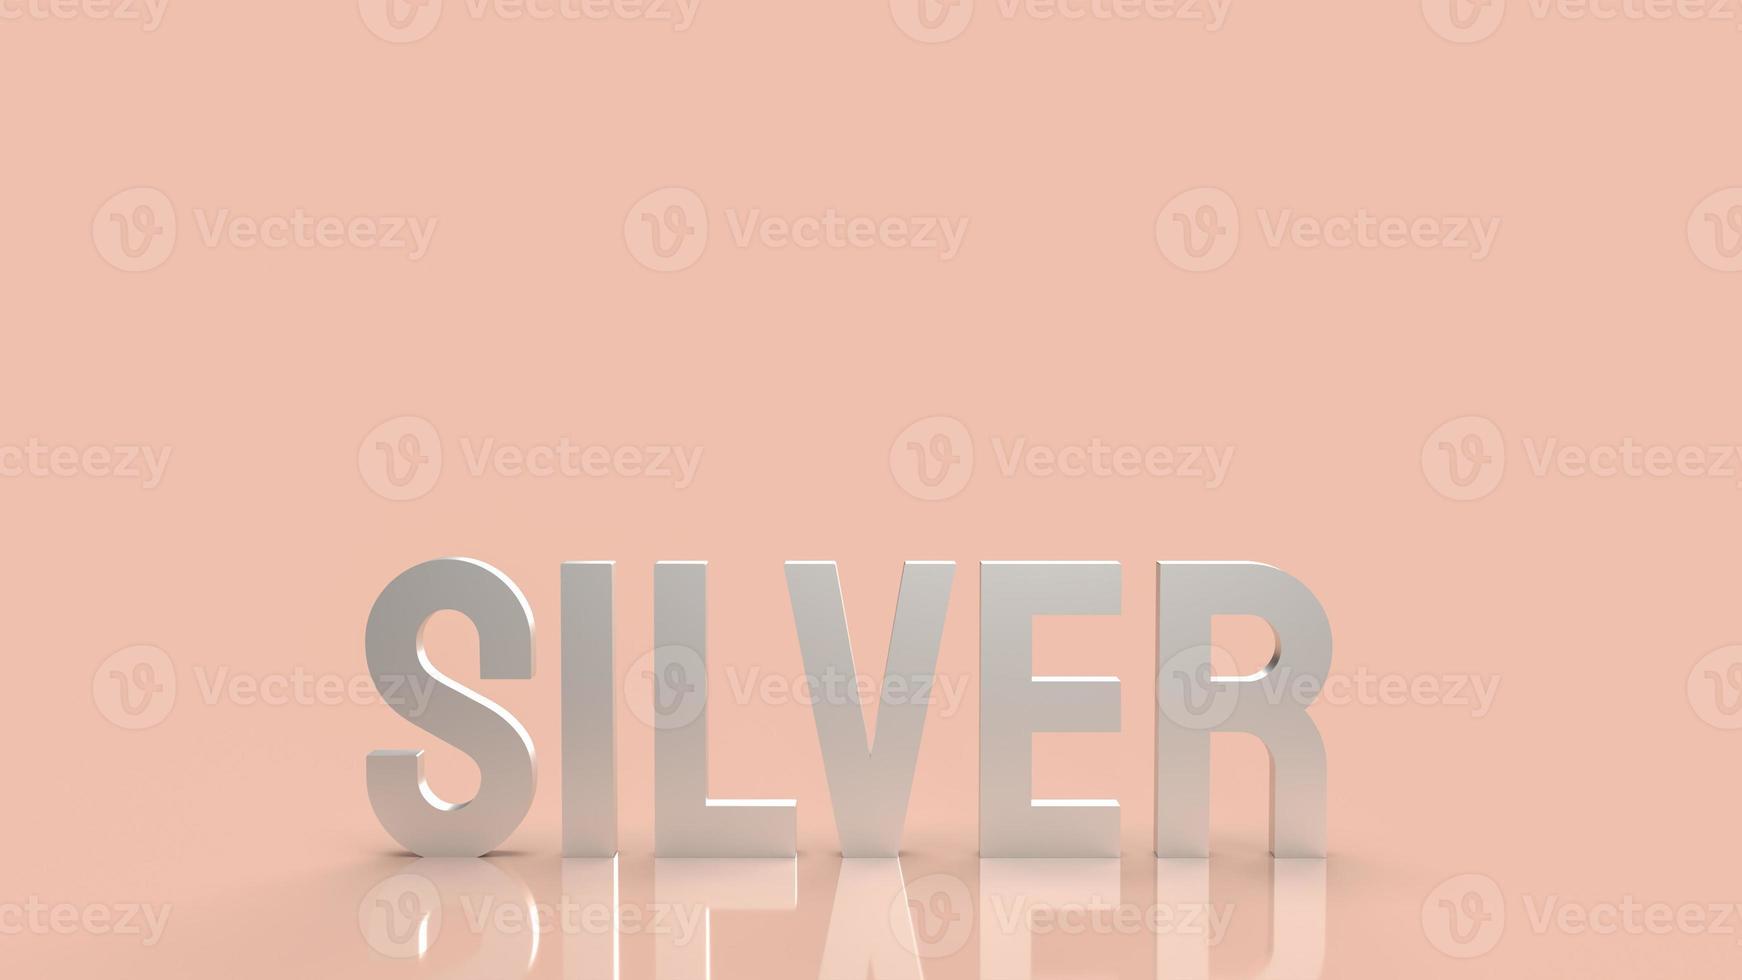 silvertexten för bakgrundsaffärsinnehåll 3d-rendering foto